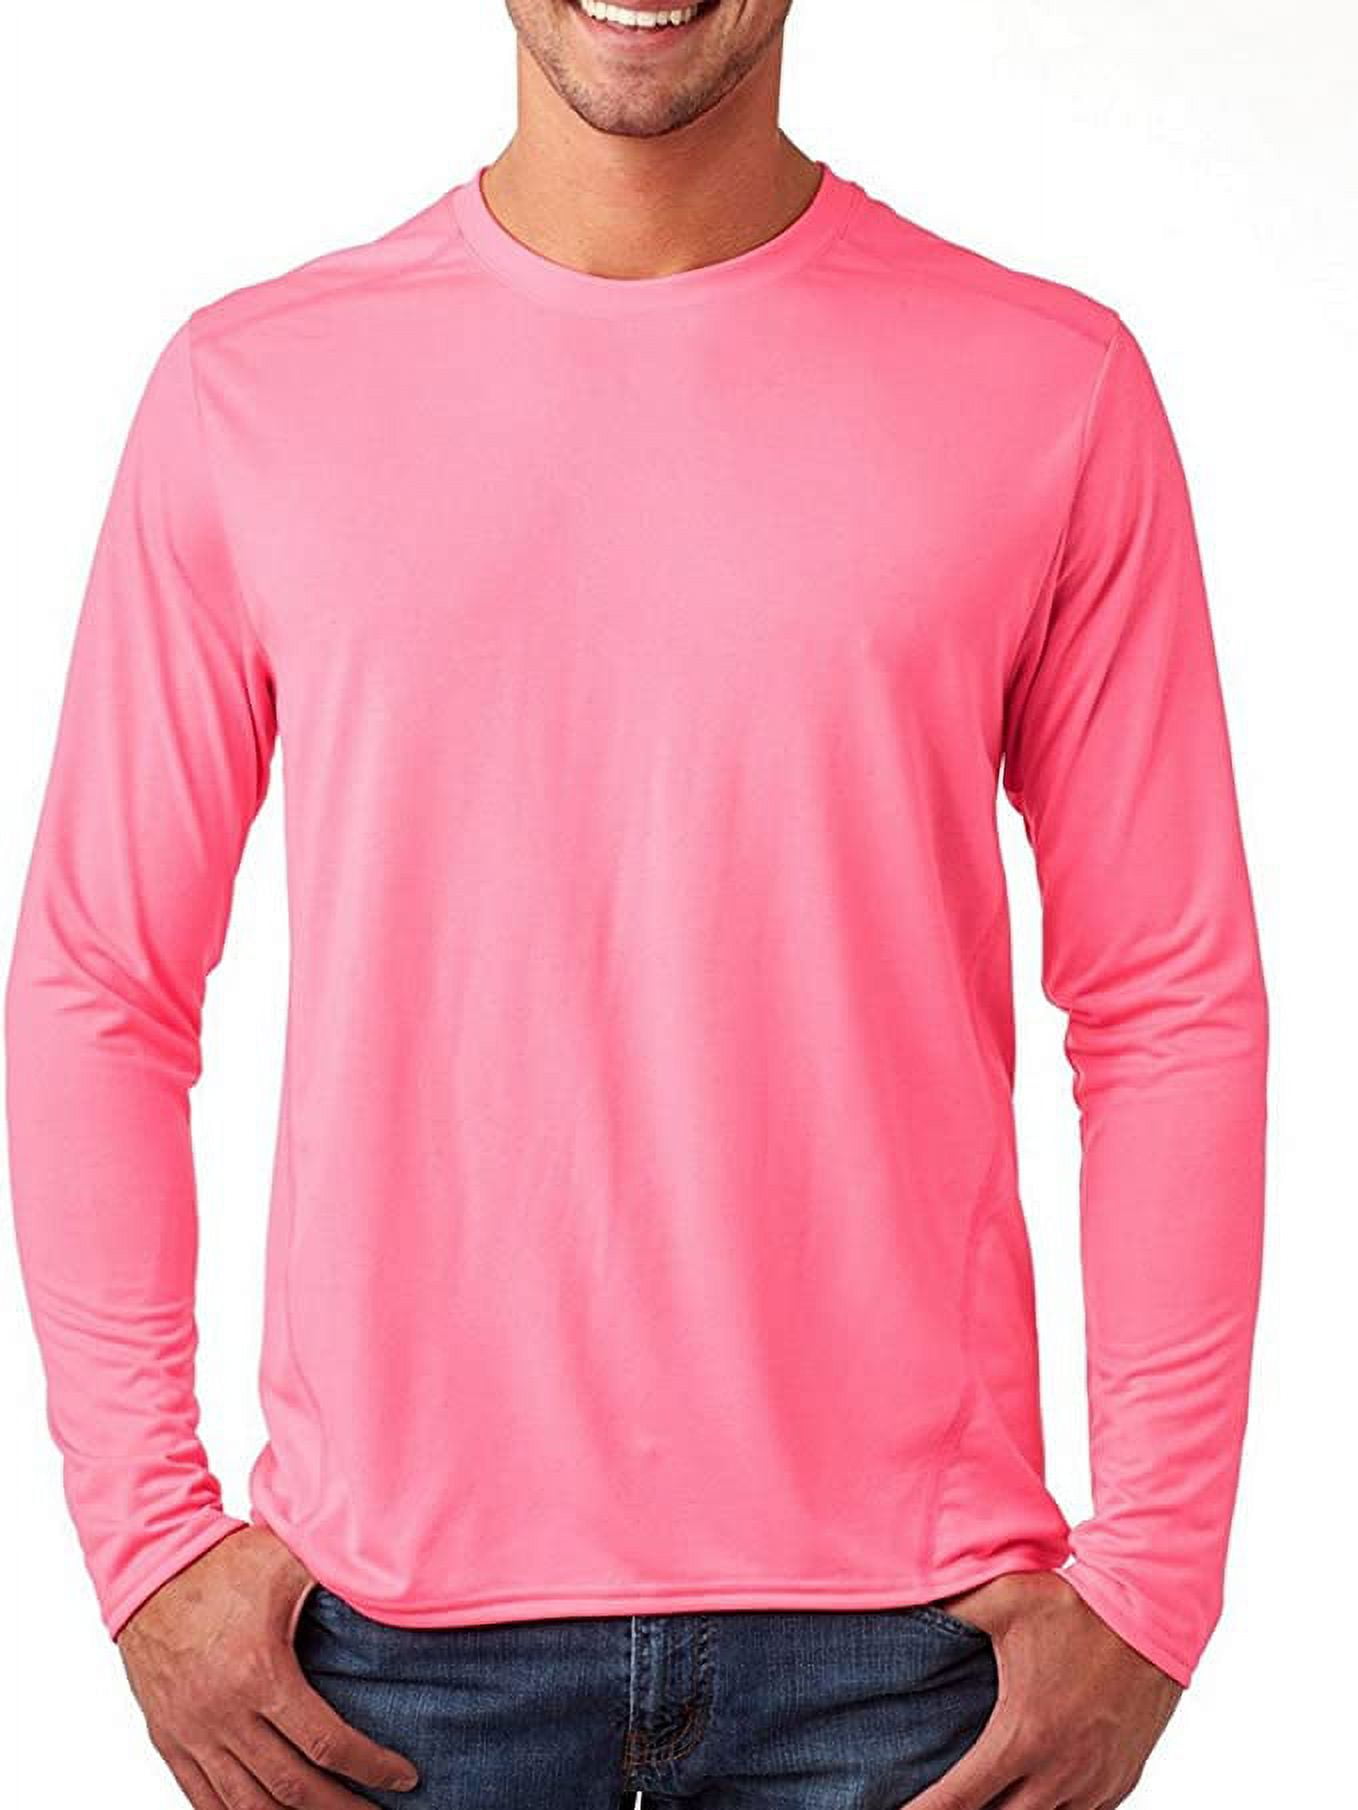 G474 Gildan Performance Long-Sleeve Tech T-Shirt Safety Pink 3XL